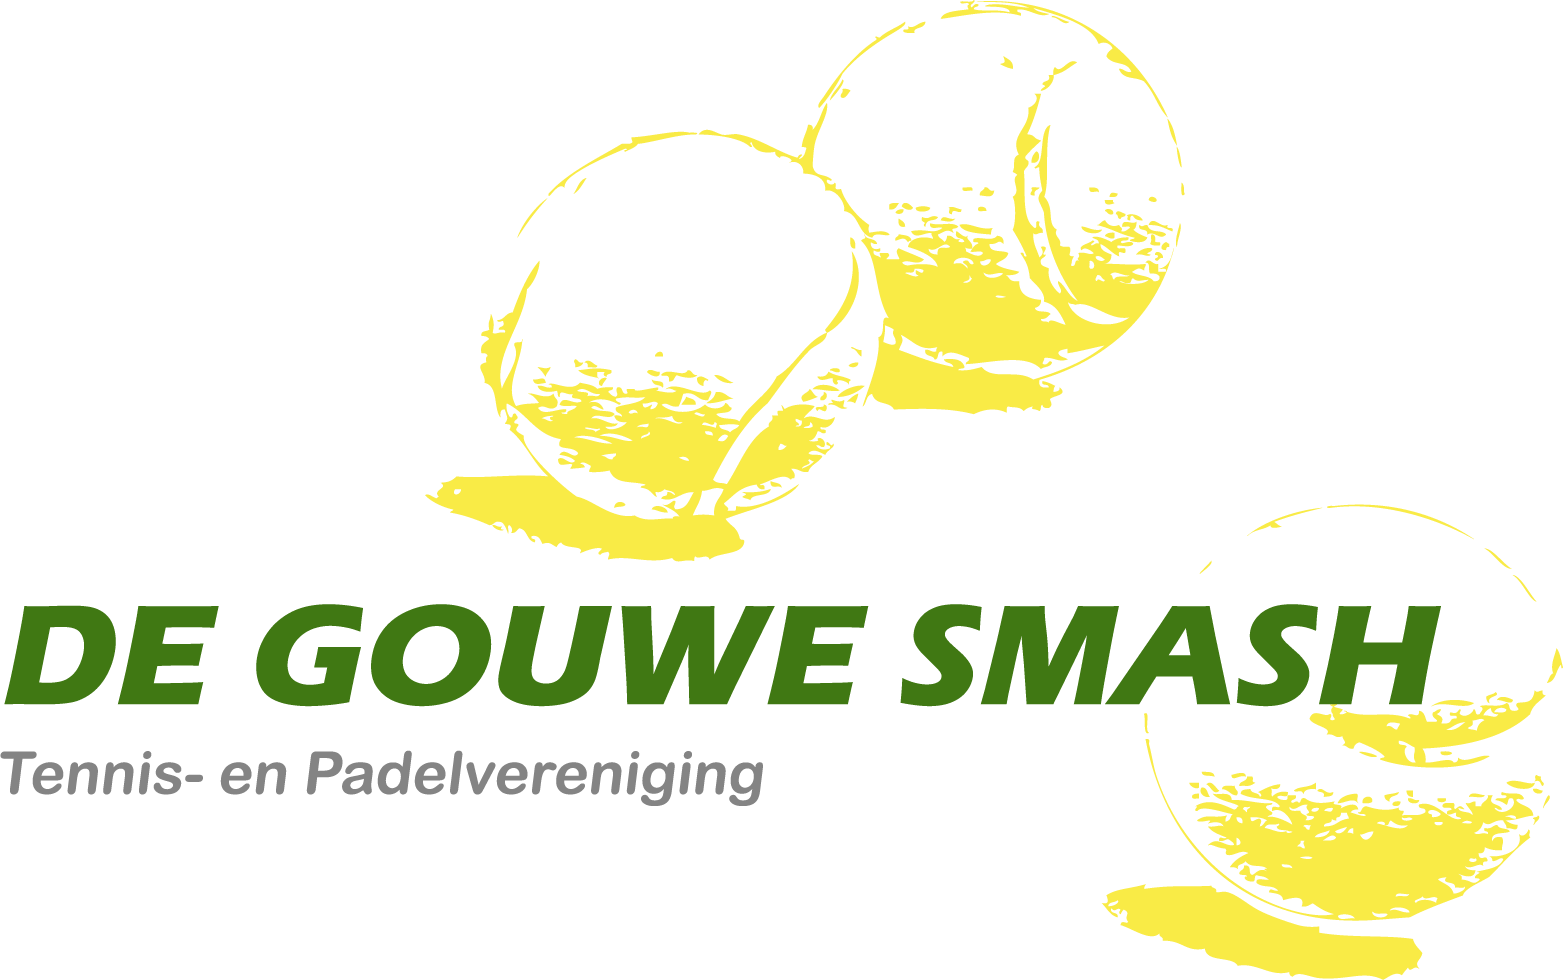 Profile image of venue De Gouwe Smash